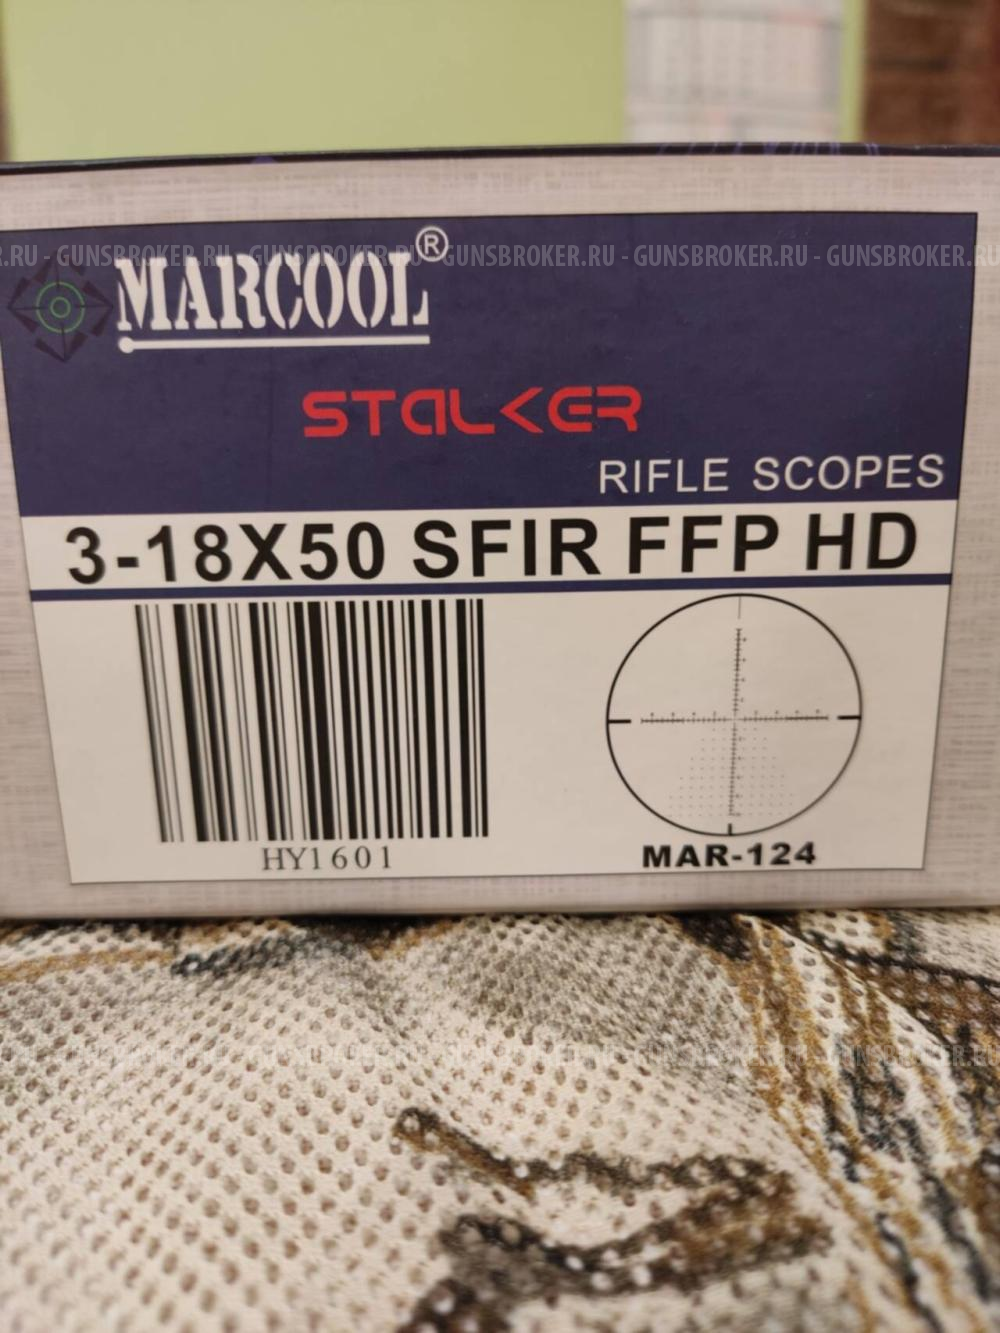  MARCOOL STALKER 3-18X50 SFIR FFP 